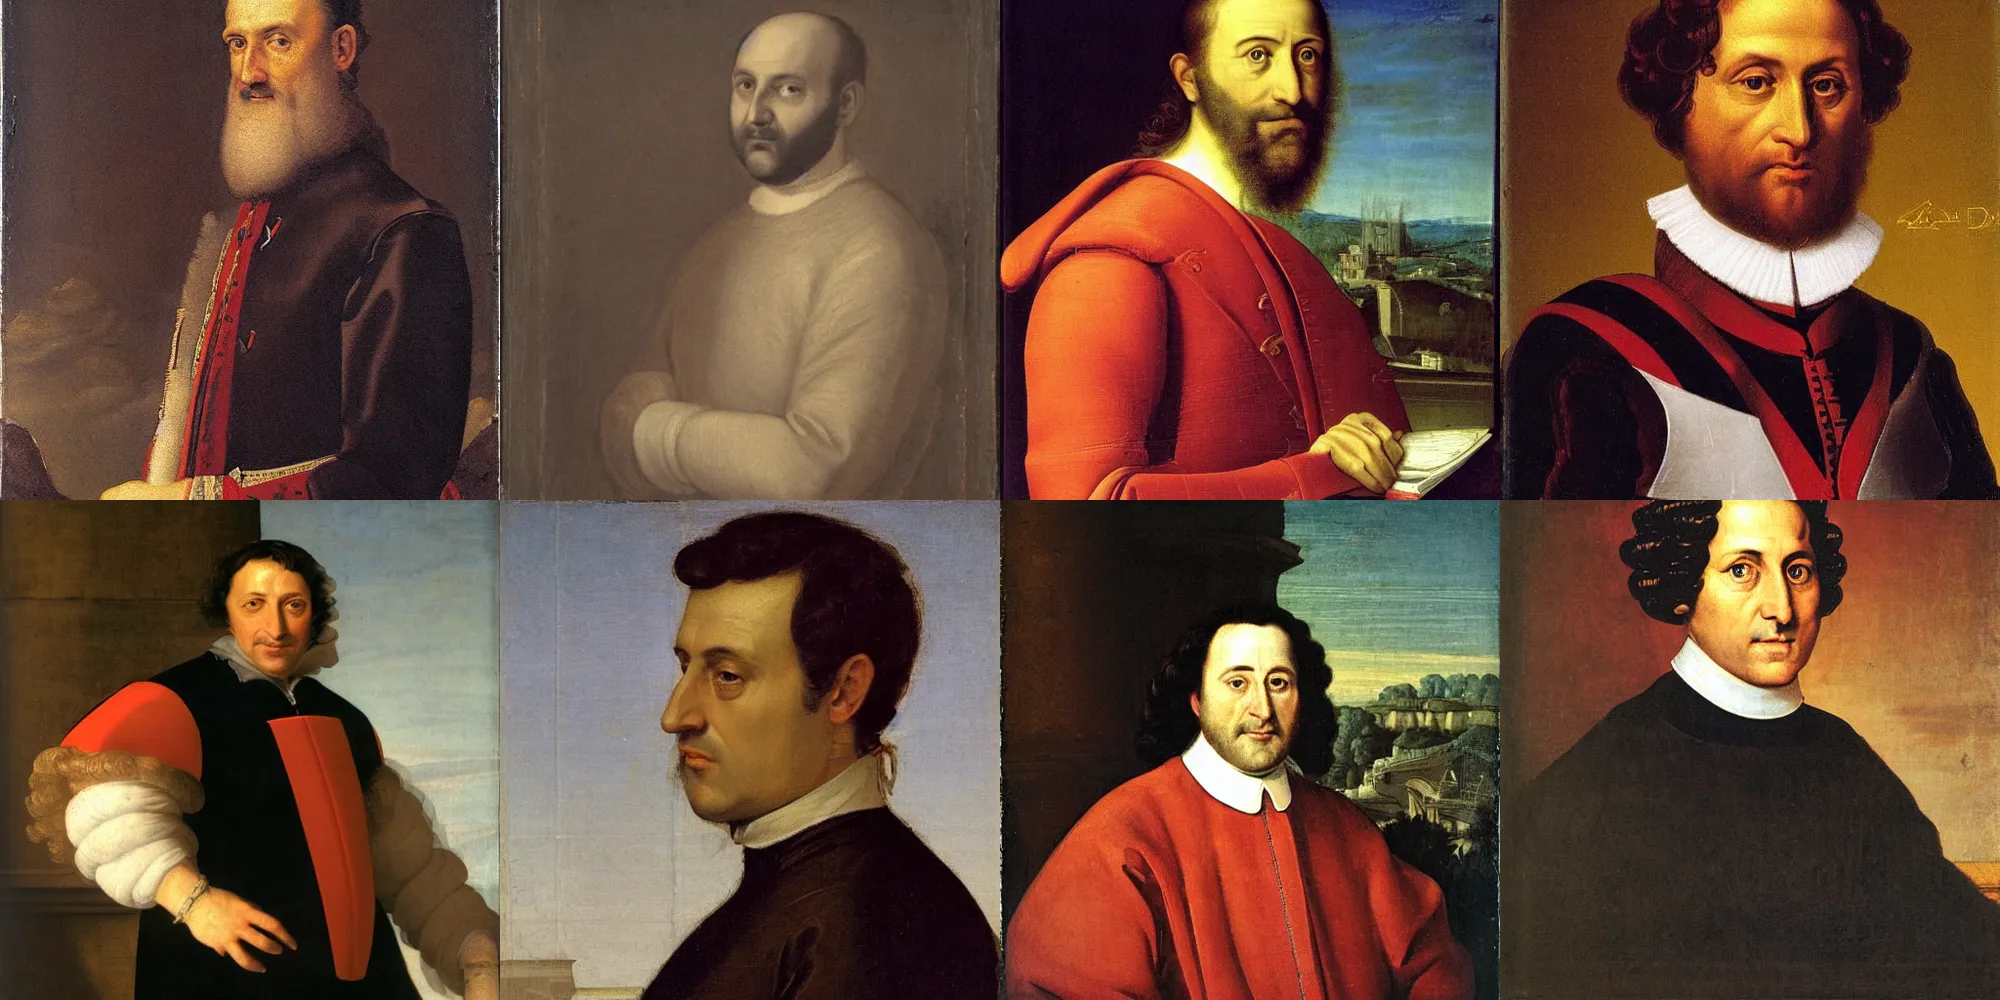 Prompt: portrait of Alessandro Di Battista